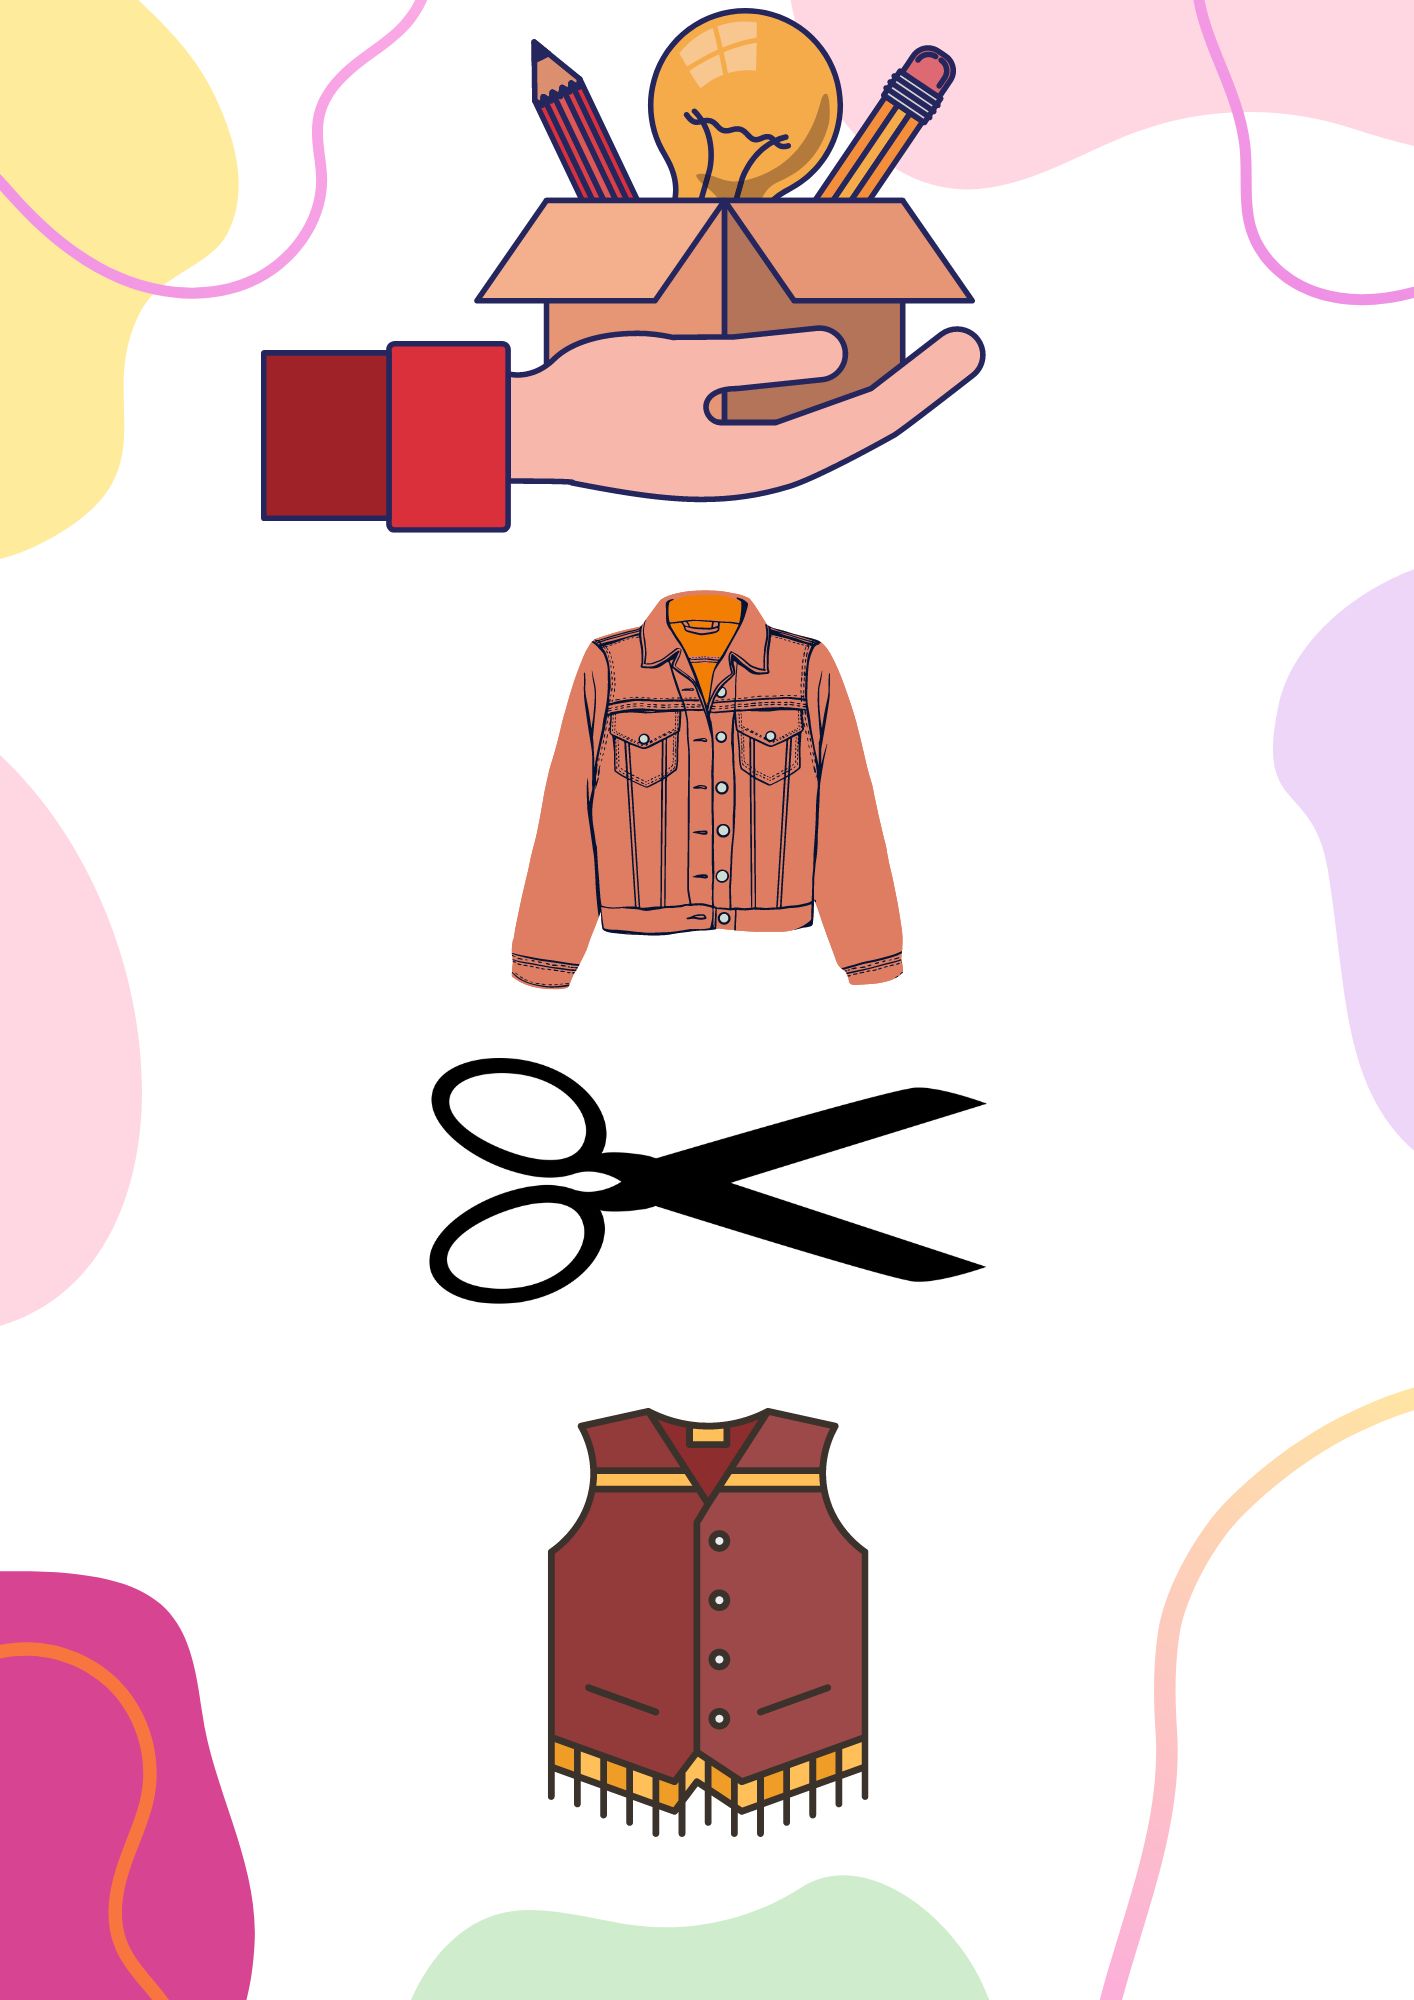 La imagen tiene fondo blanco y varios colores en los bordes, muestra una mano sosteniendo una bombilla y una caja con herramientas. Debajo hay una chaqueta, debajo unas tijeras y debajo un chaleco.